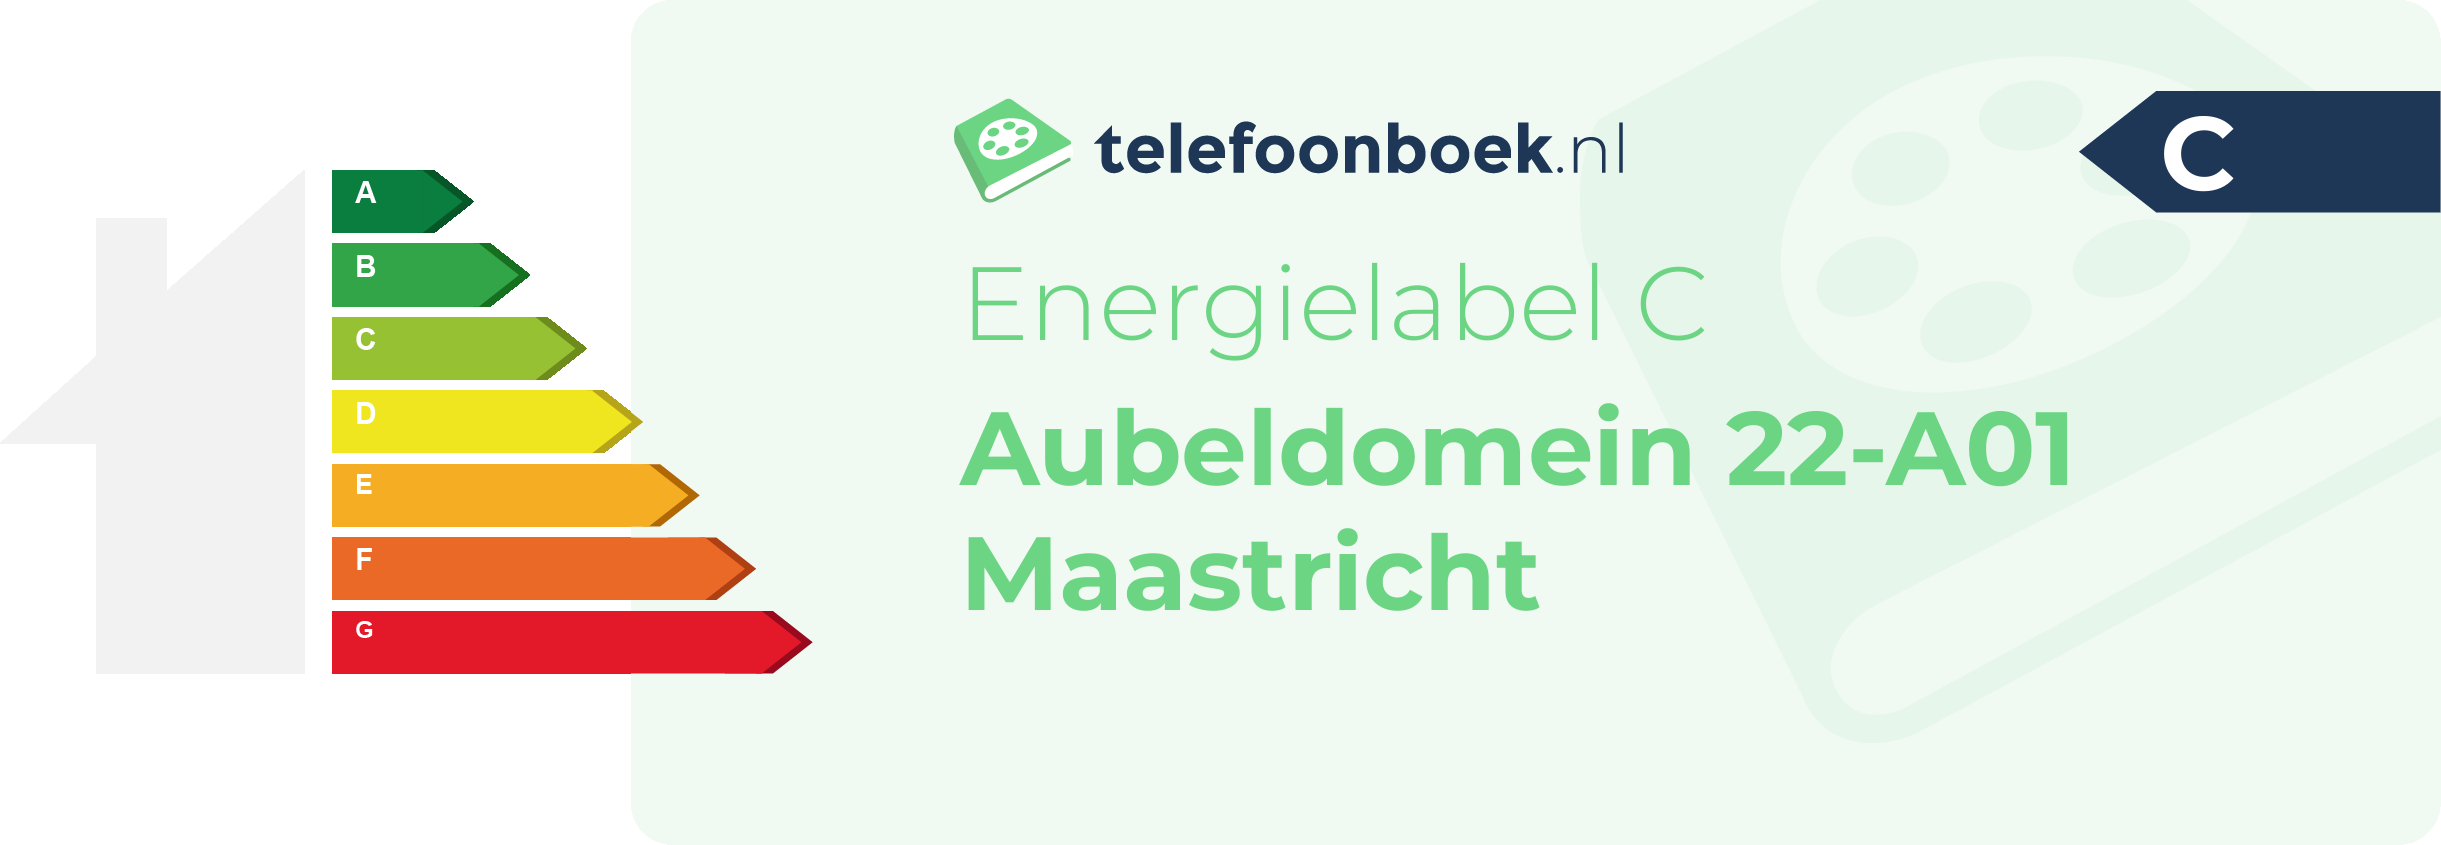 Energielabel Aubeldomein 22-A01 Maastricht